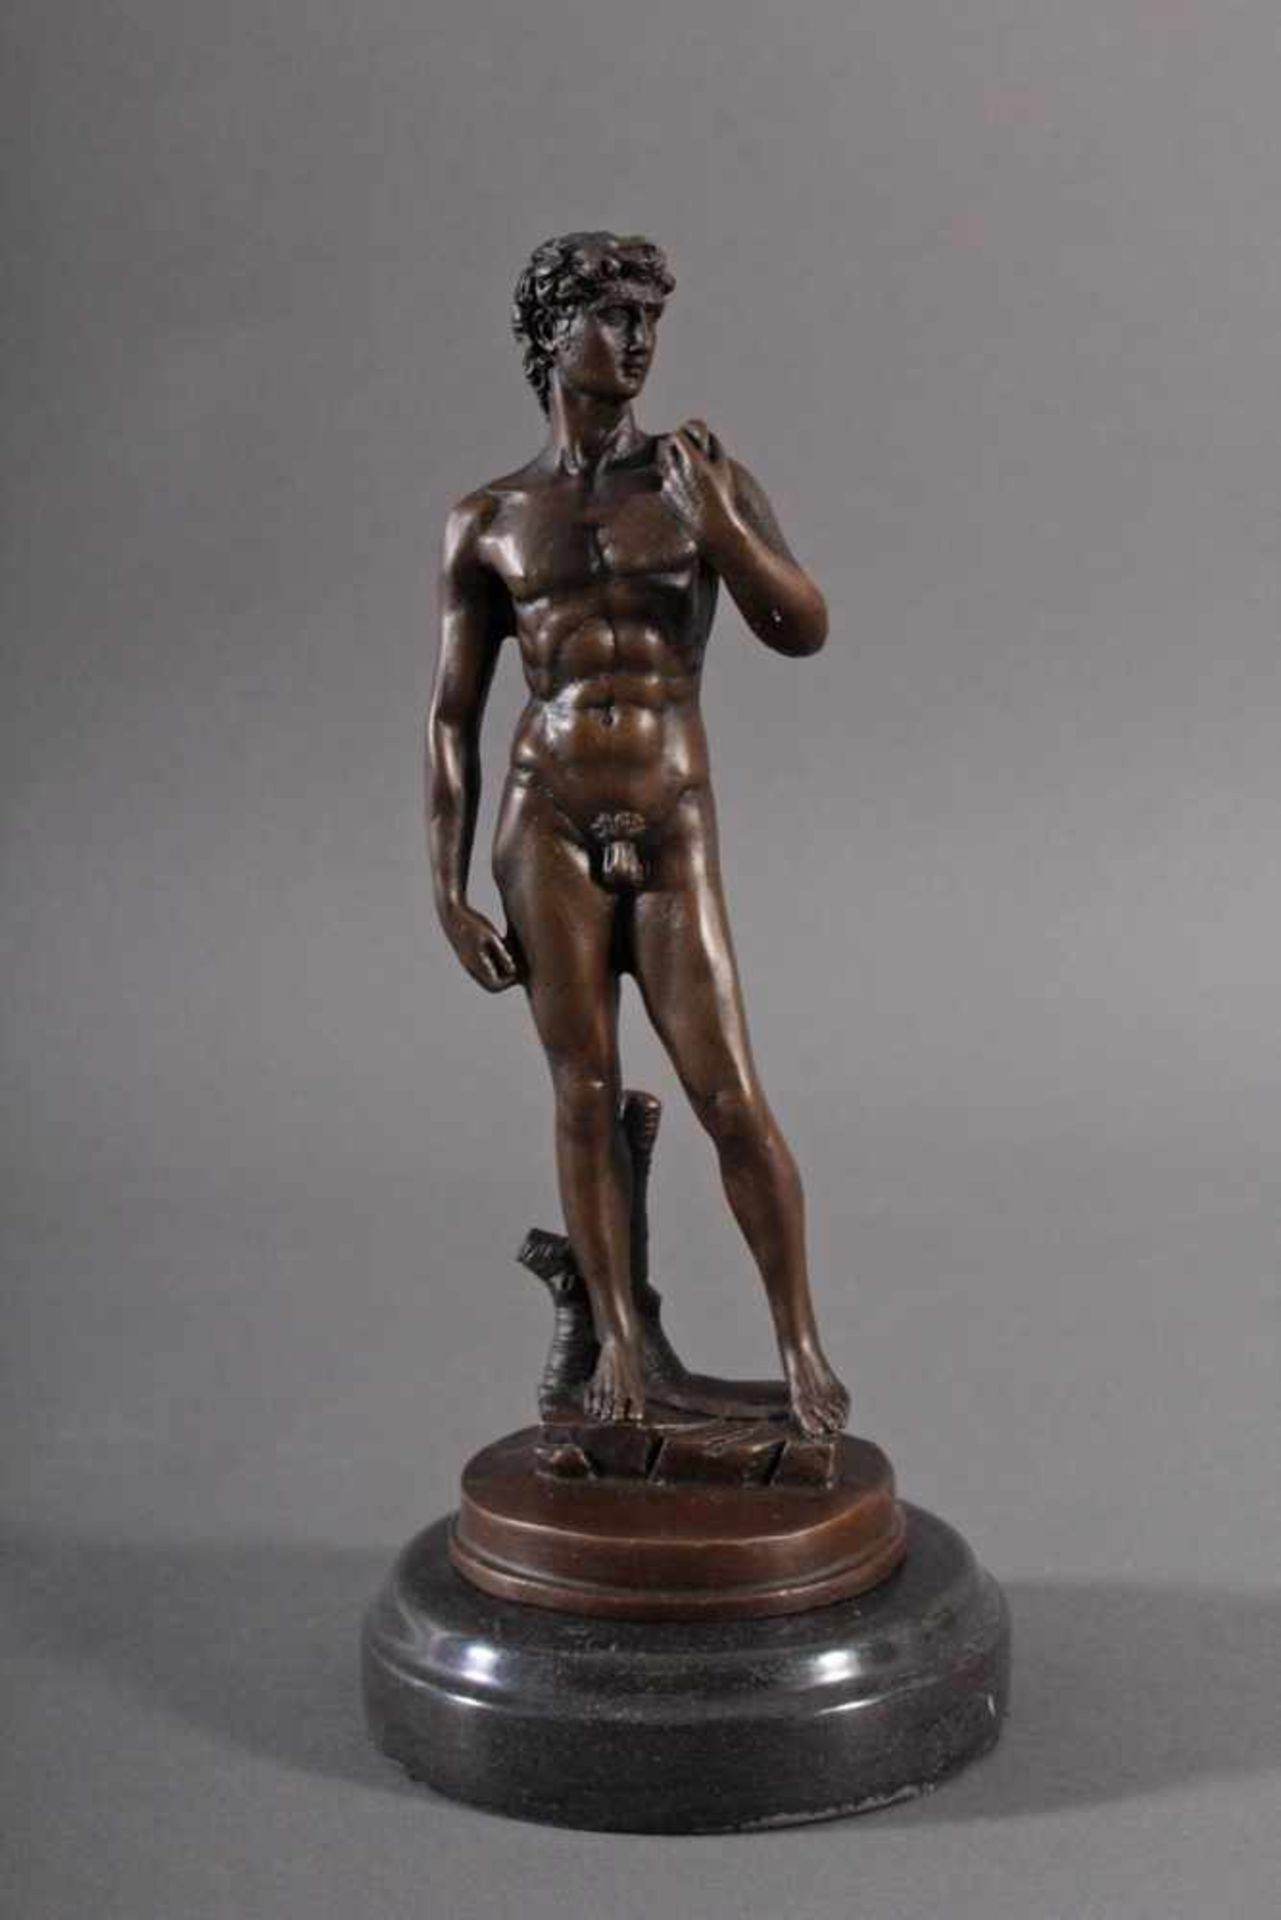 Bronzefigur nach Michelangelo (1475 - 1564), "David"Nachguss, stehende Figur auf runder Plinthe